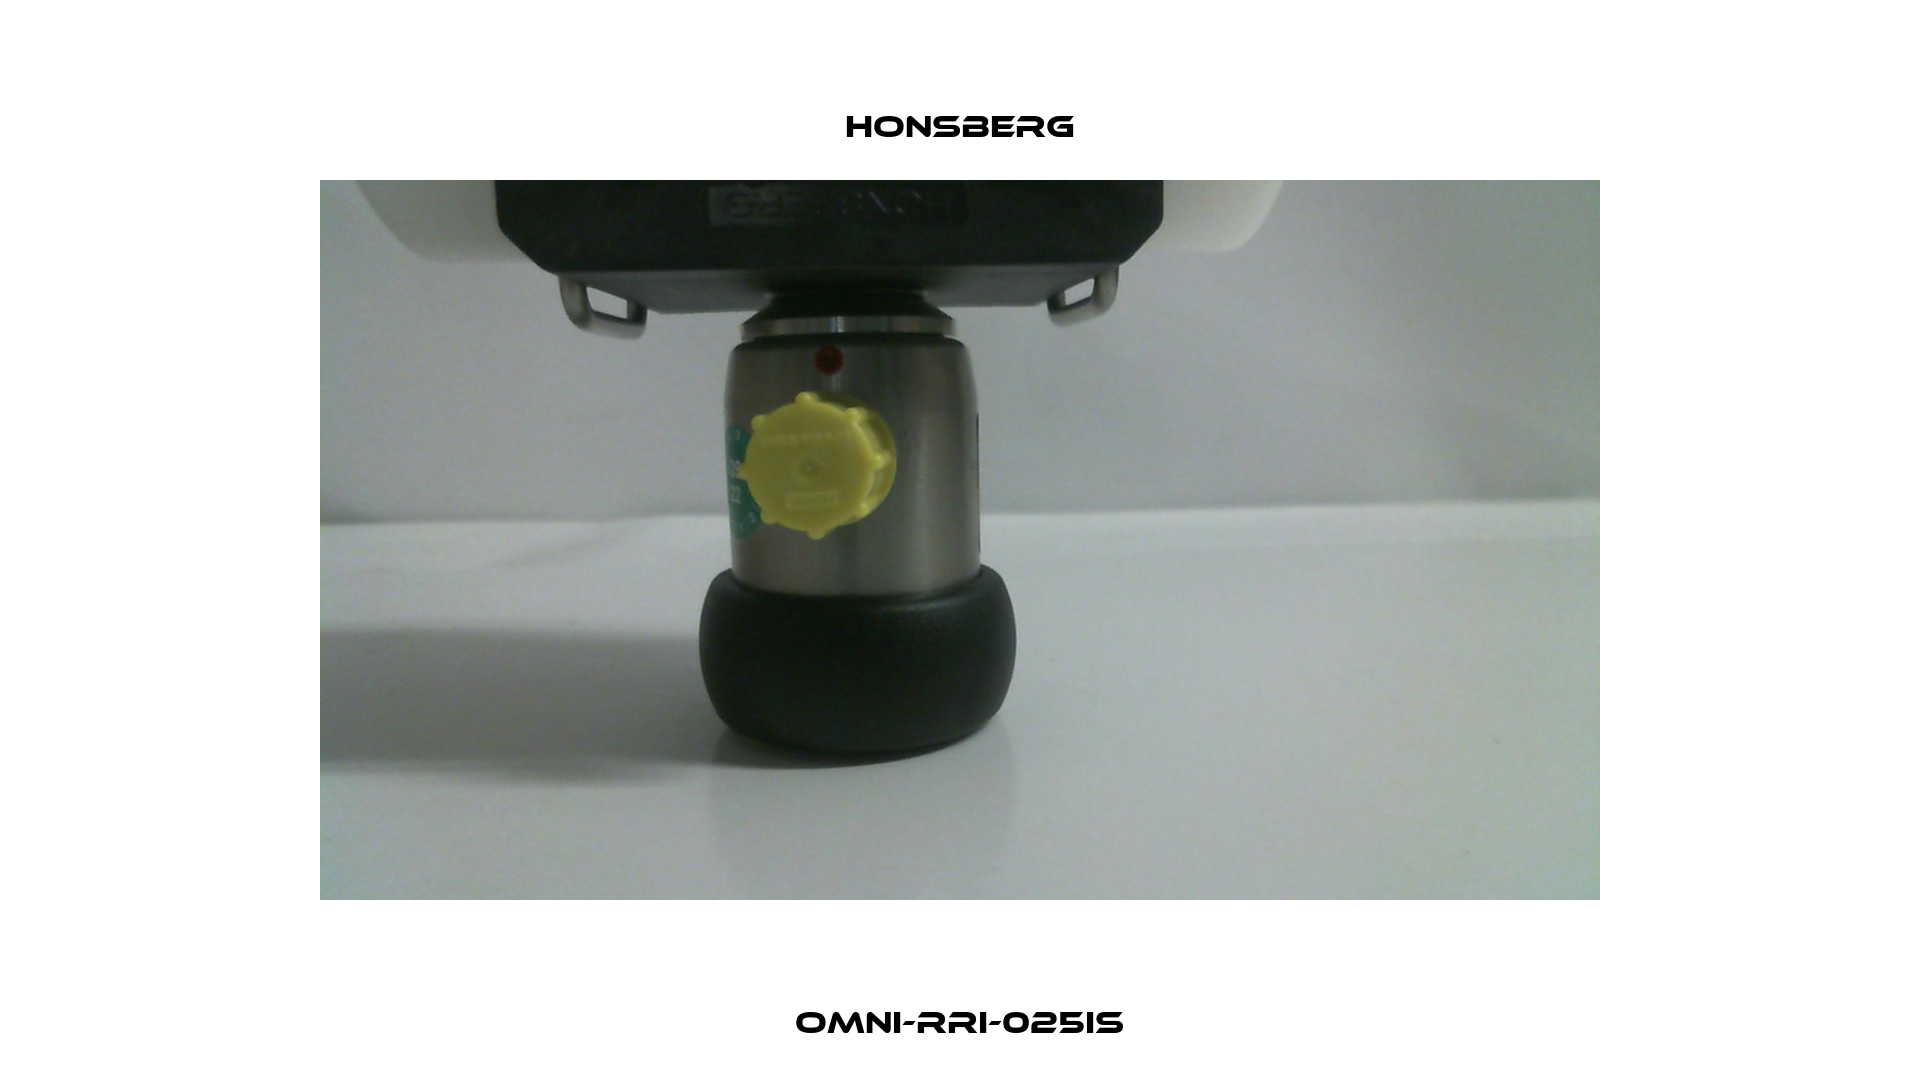 OMNI-RRI-025IS Honsberg